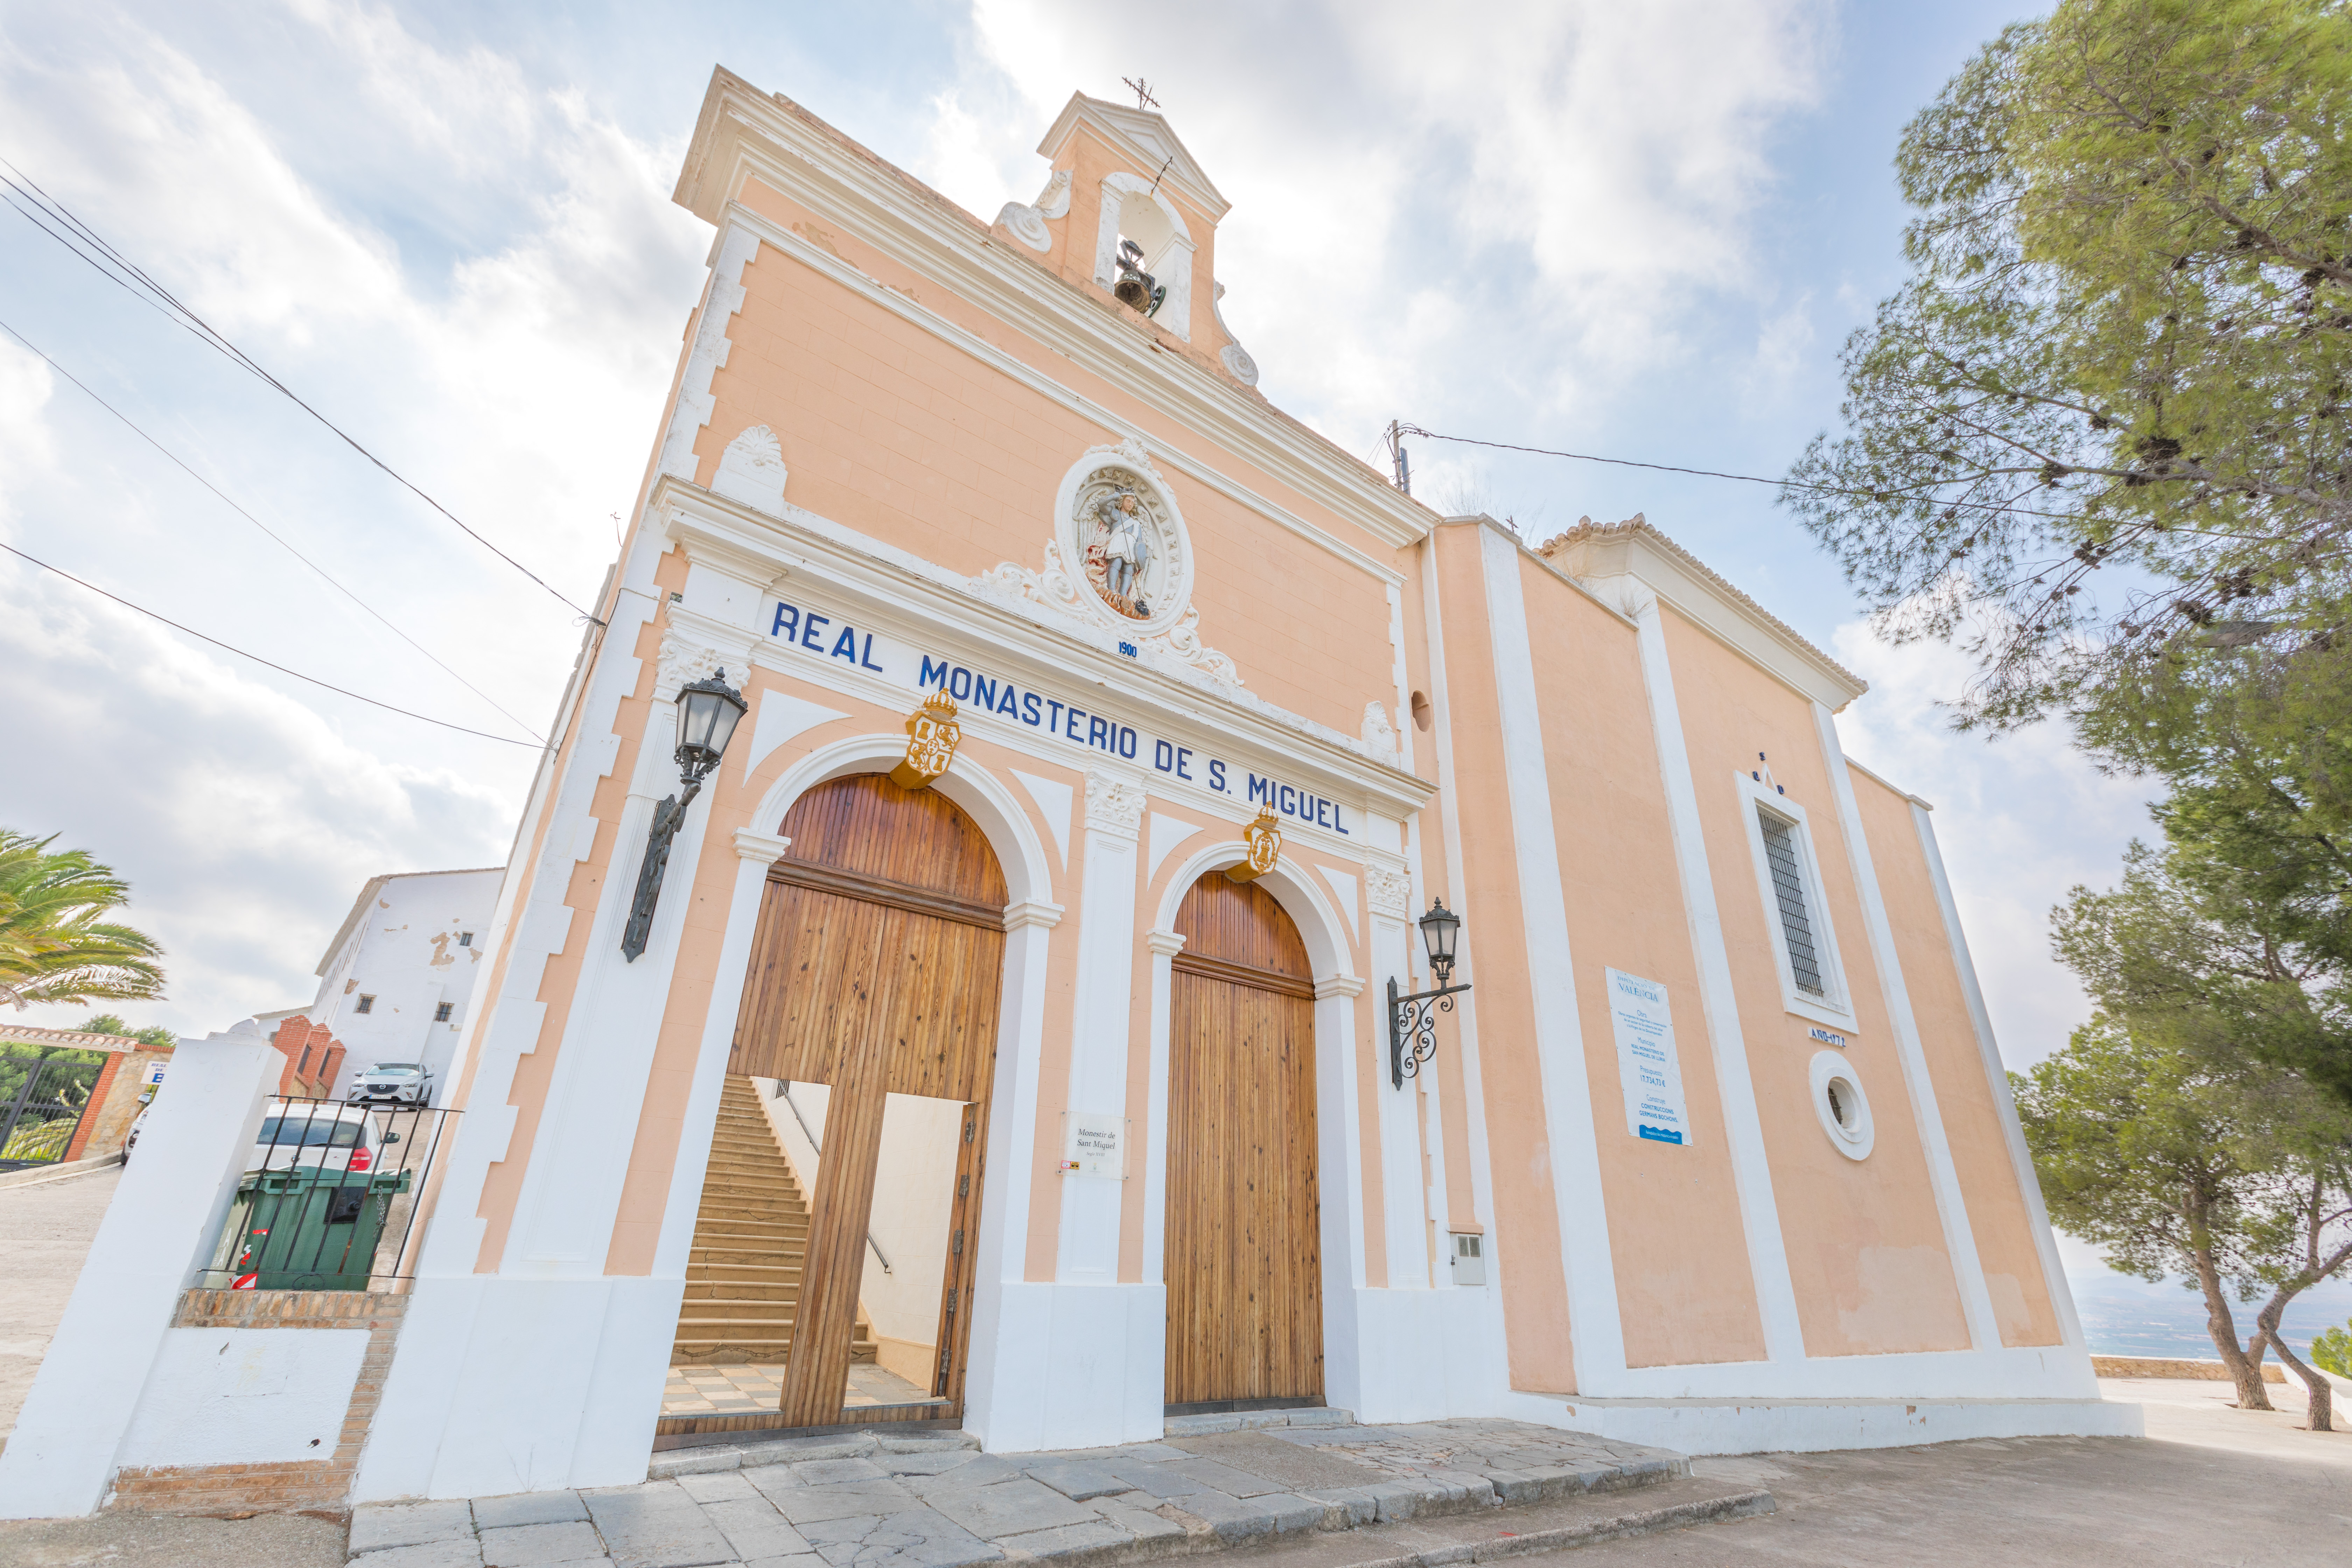 Real Monasterio de San Miguel de Llíria